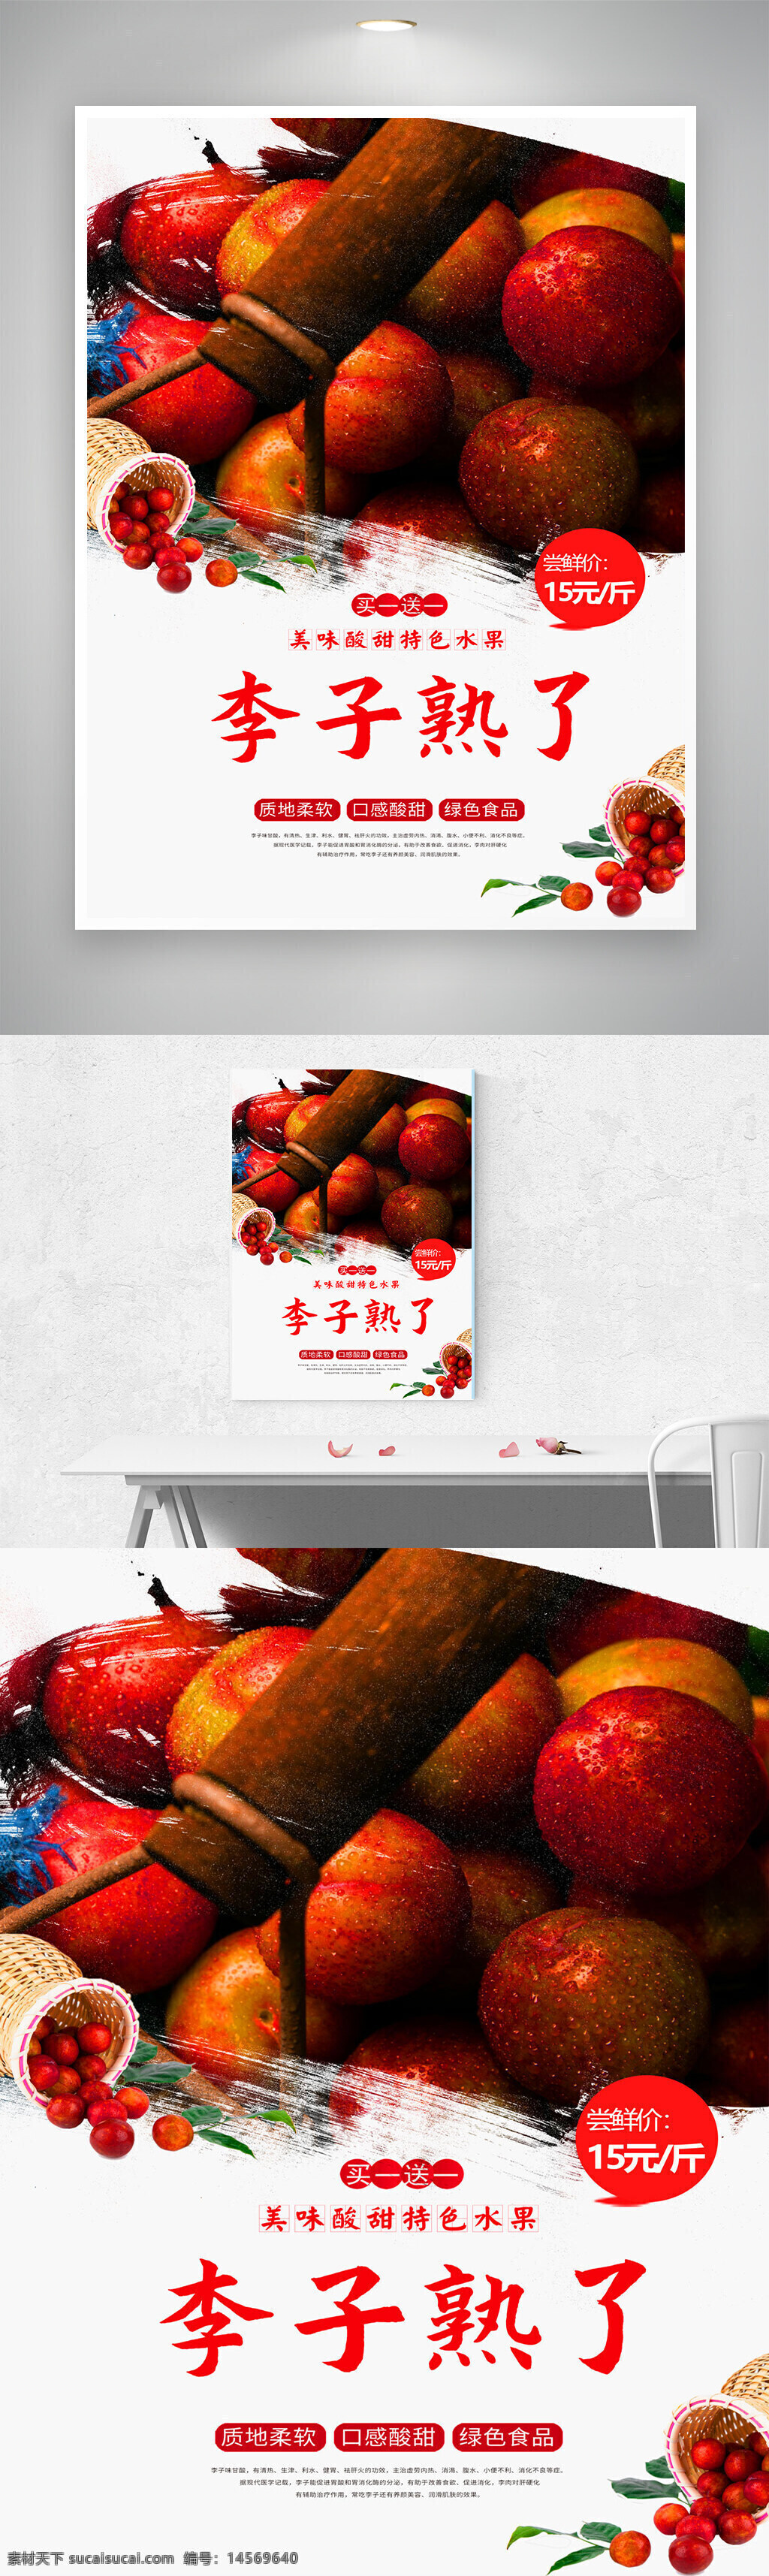 夏季促销 促销海报 水果海报 水果促销海报 李子 水果 水果促销 夏季促销广告